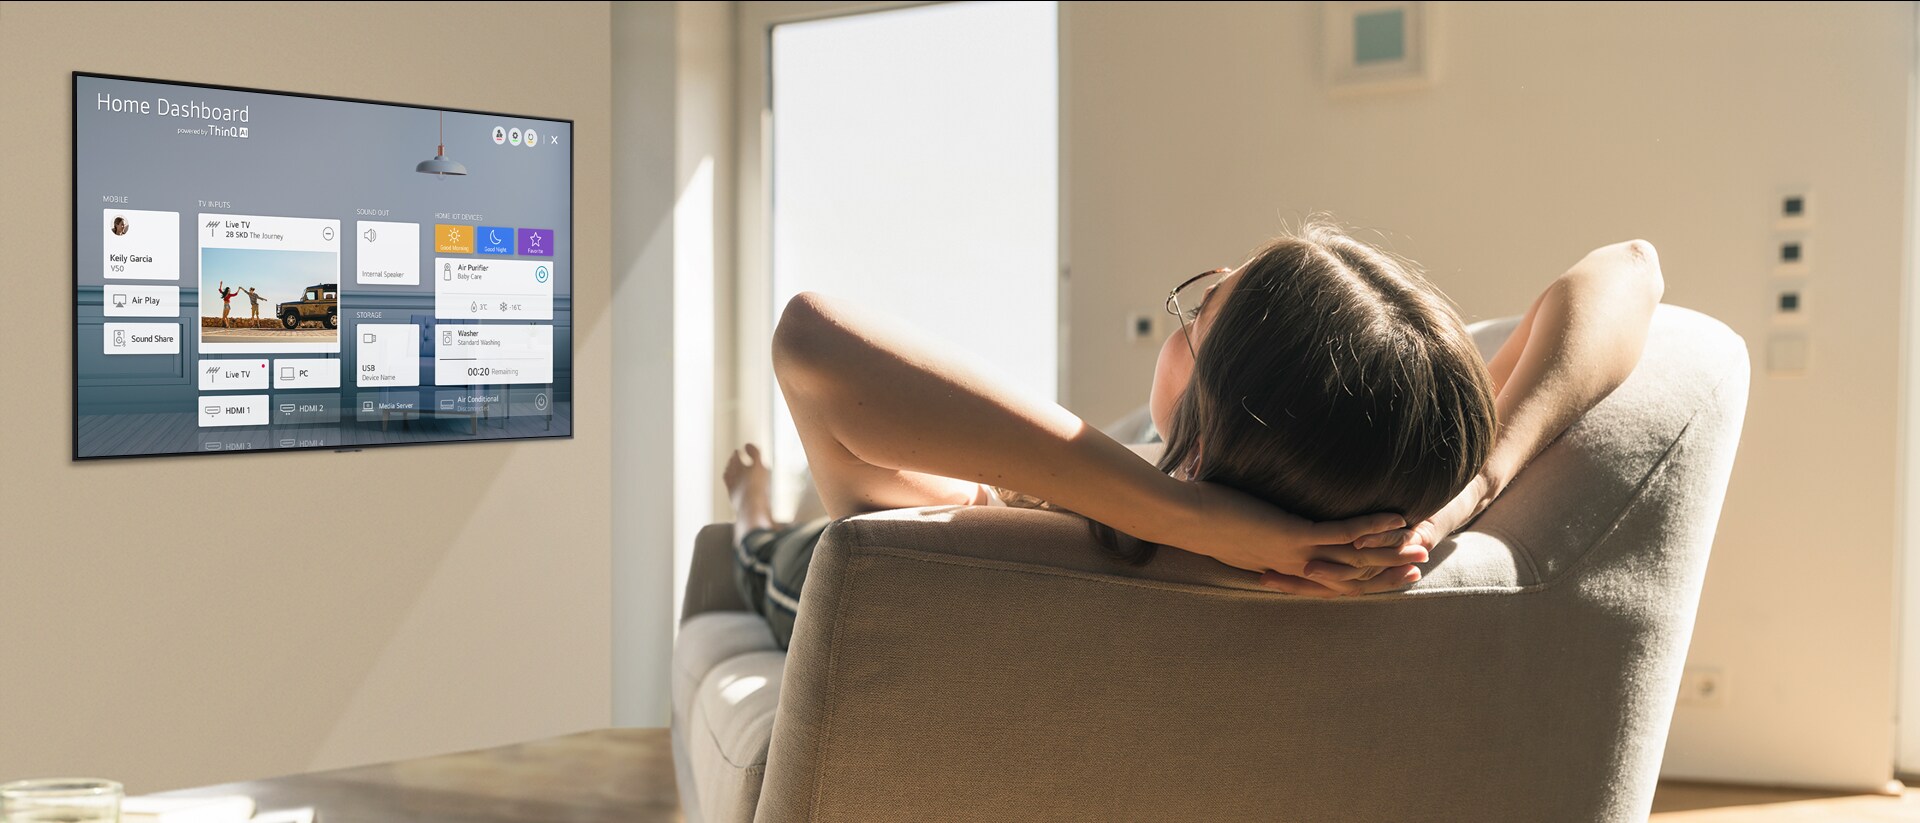 Žena koja leži na sofi govori televizoru da smanji temperaturu pomoću kontrolne table na TV ekranu